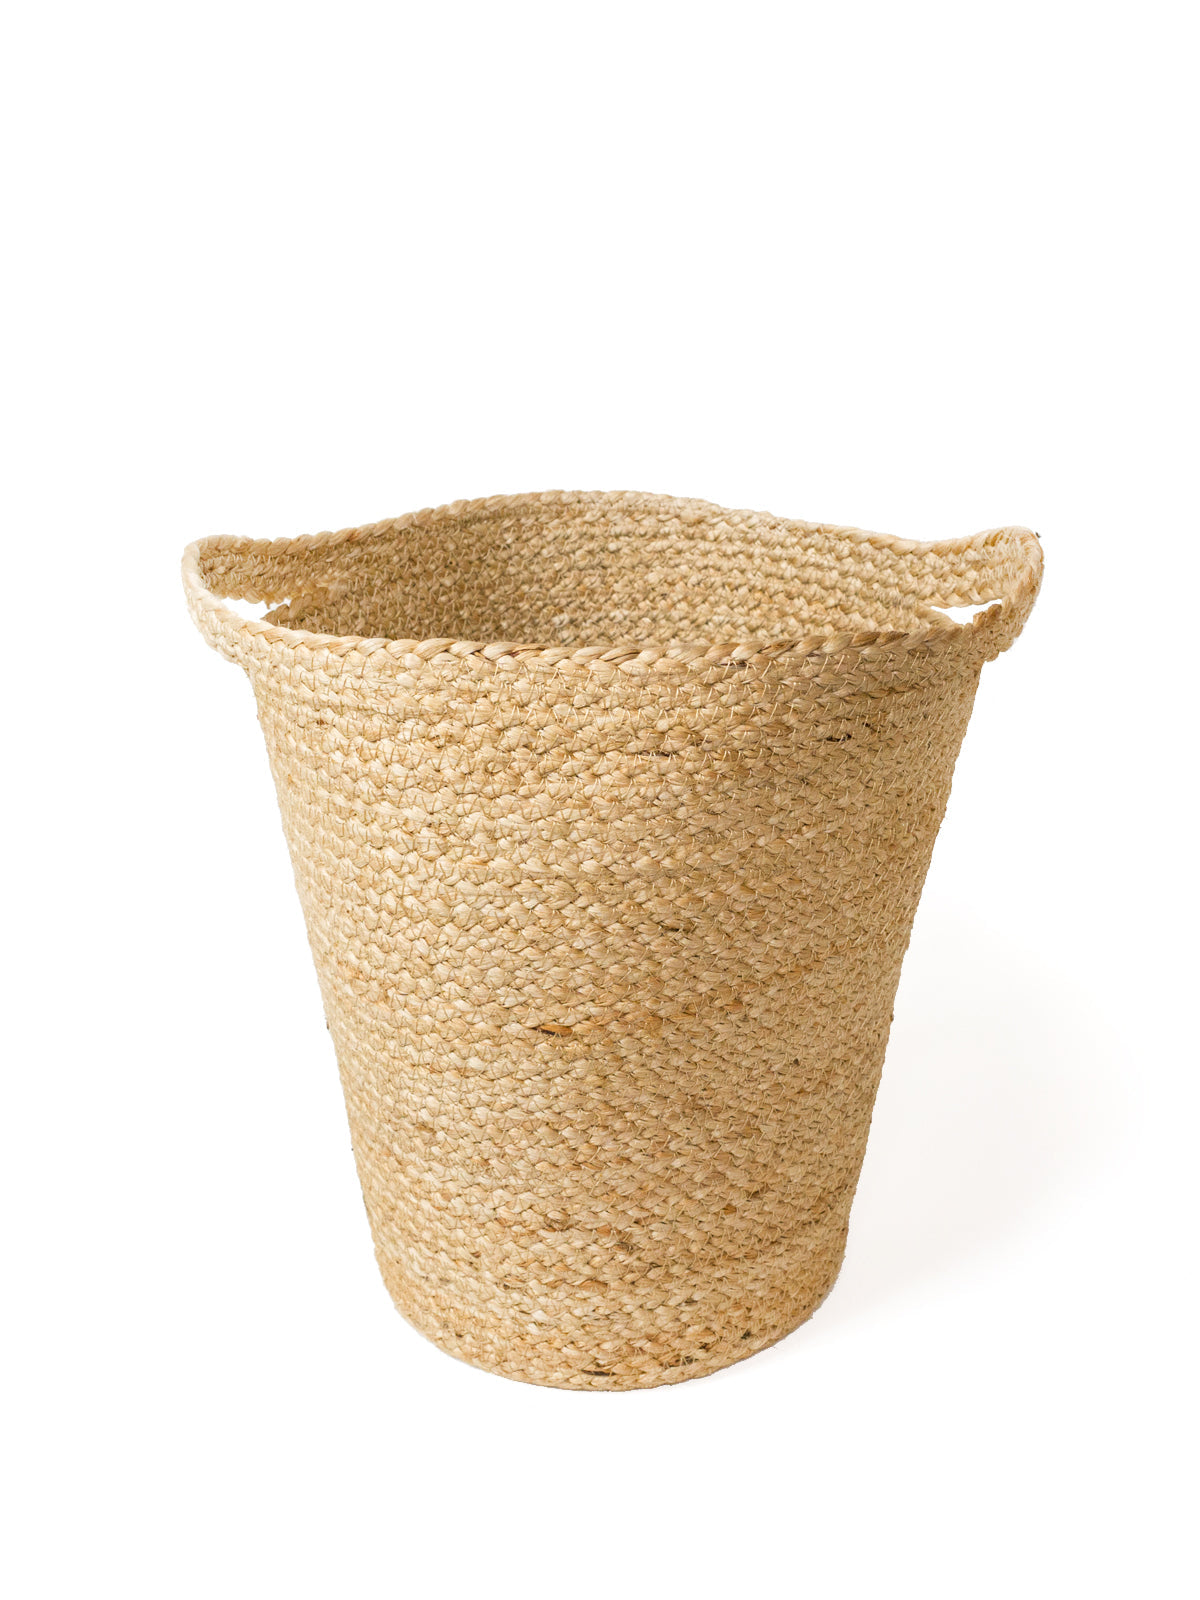 Kata Basket with Slit Handle - BagLunchproduct,corp